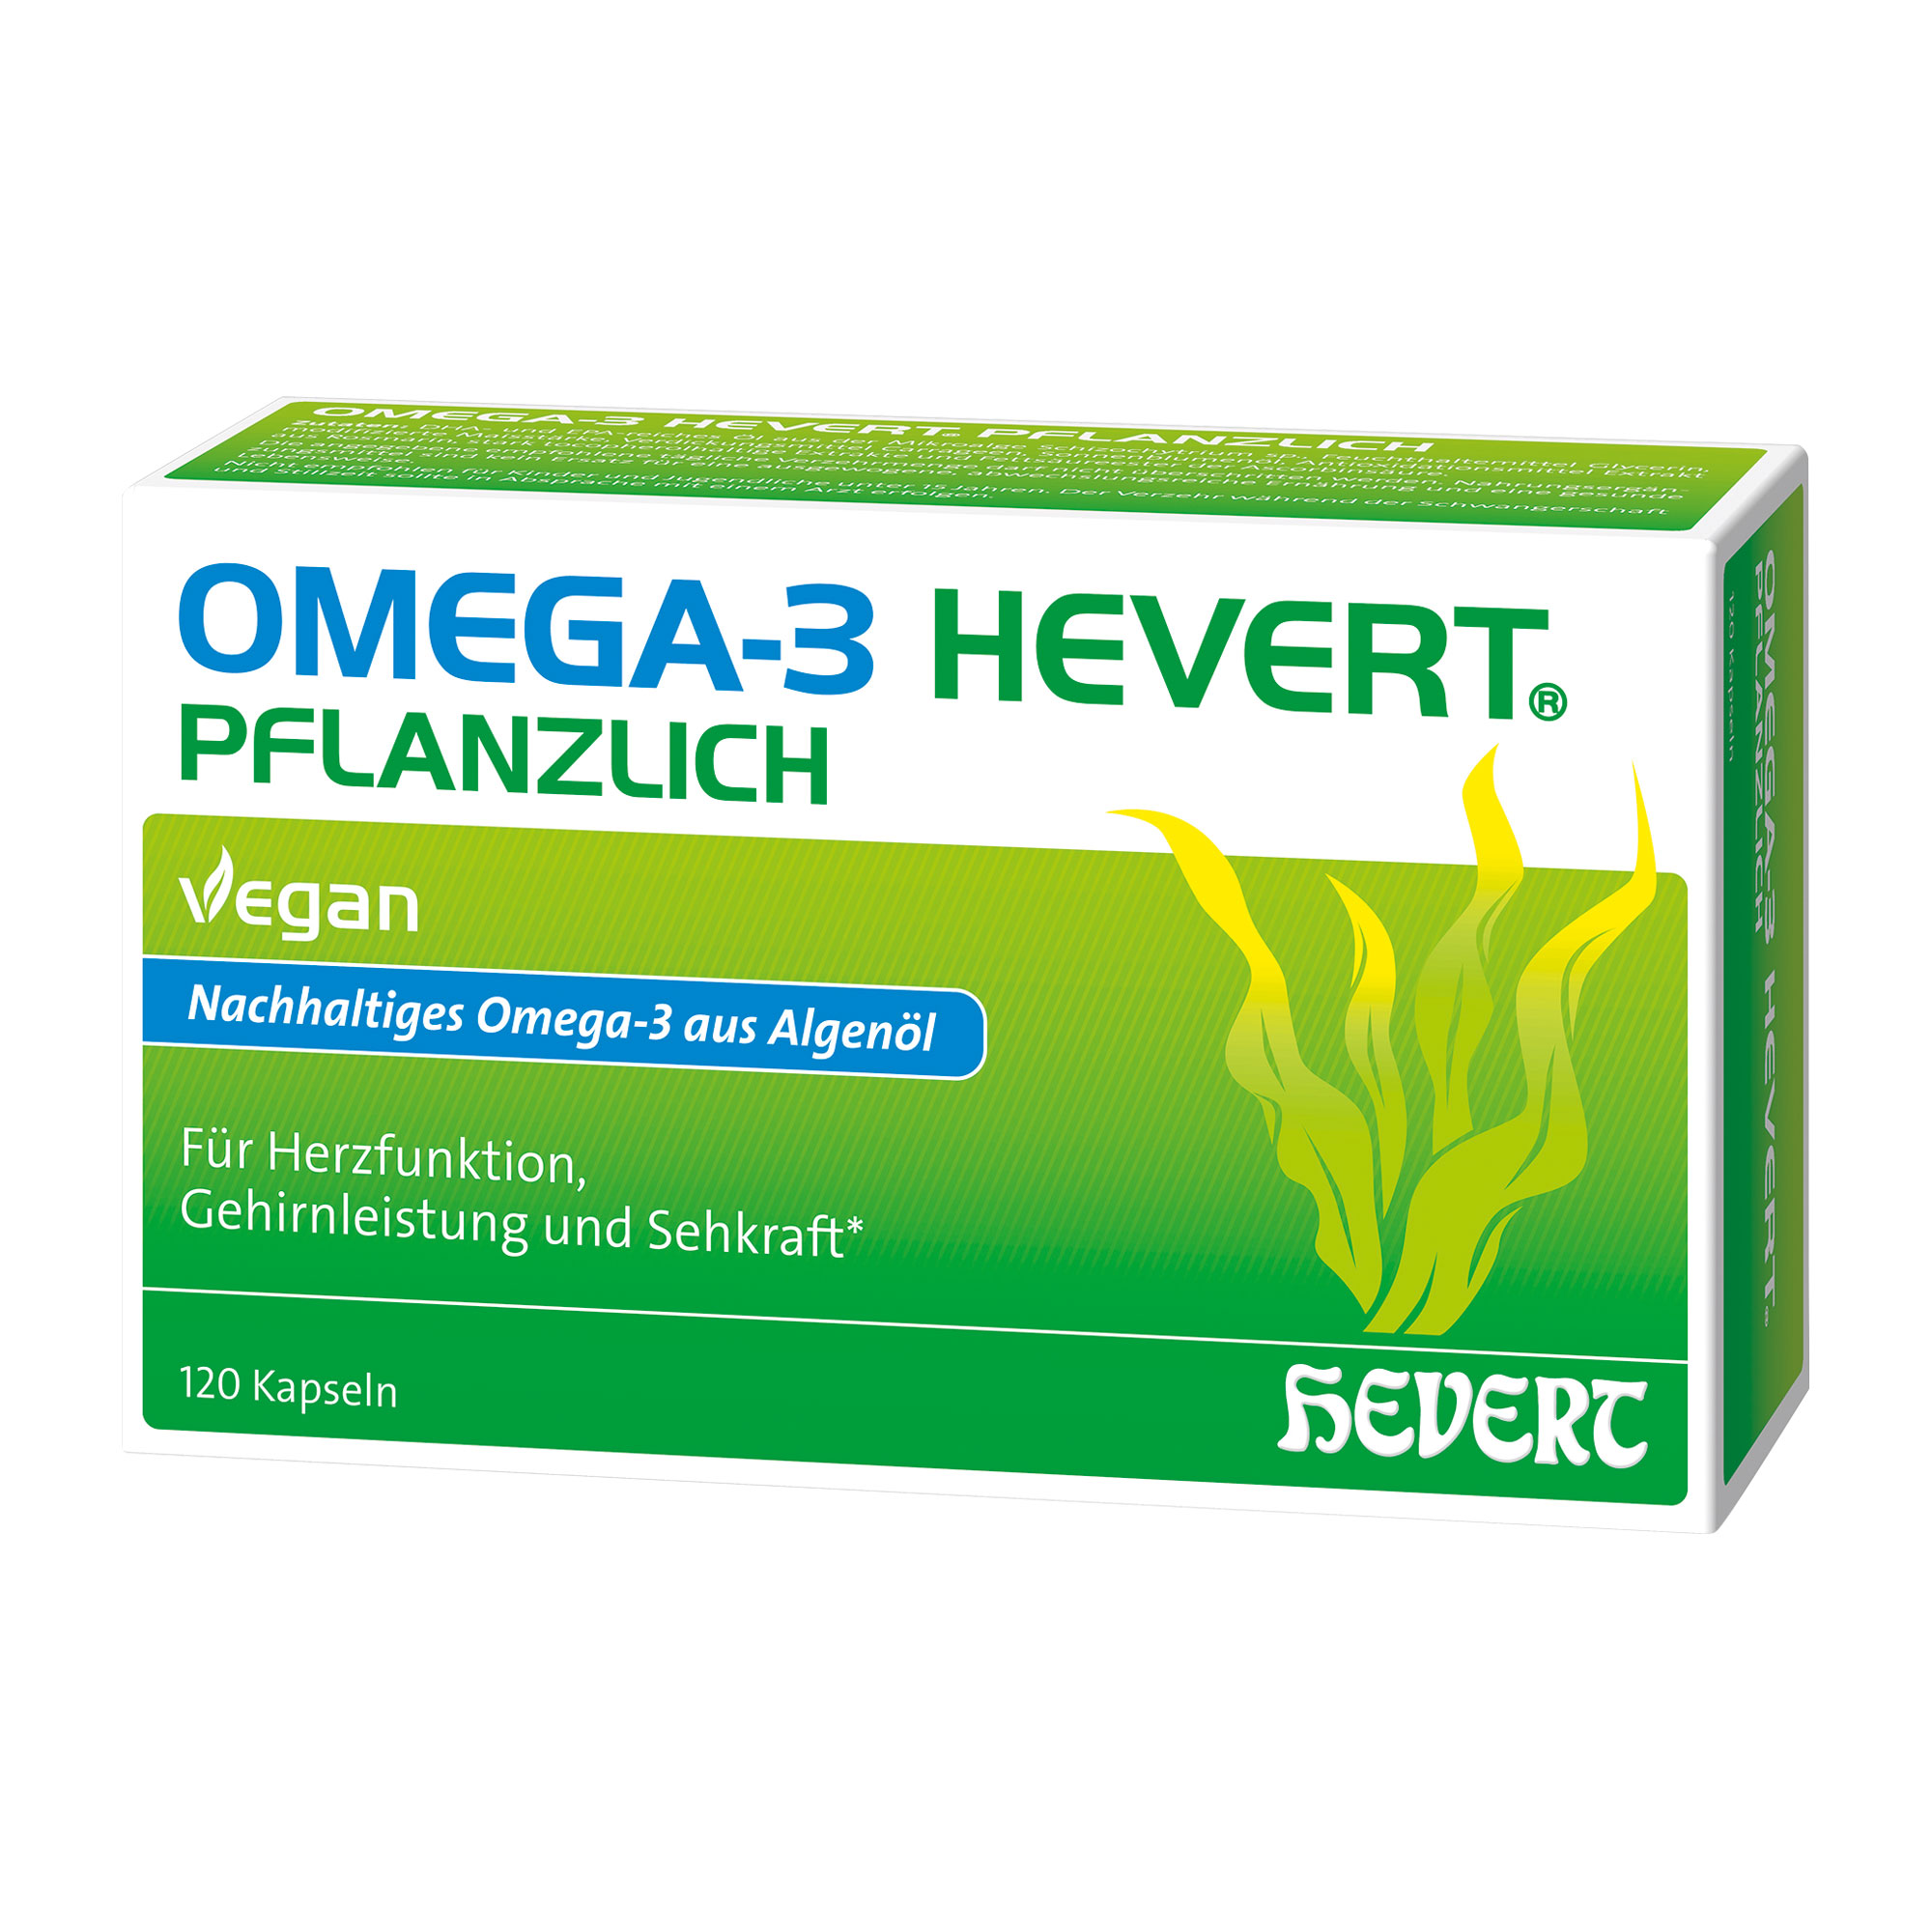 Pflanzliches Omega-3 Nahrungsergänzungsmittel aus nachhaltigem Algenöl.